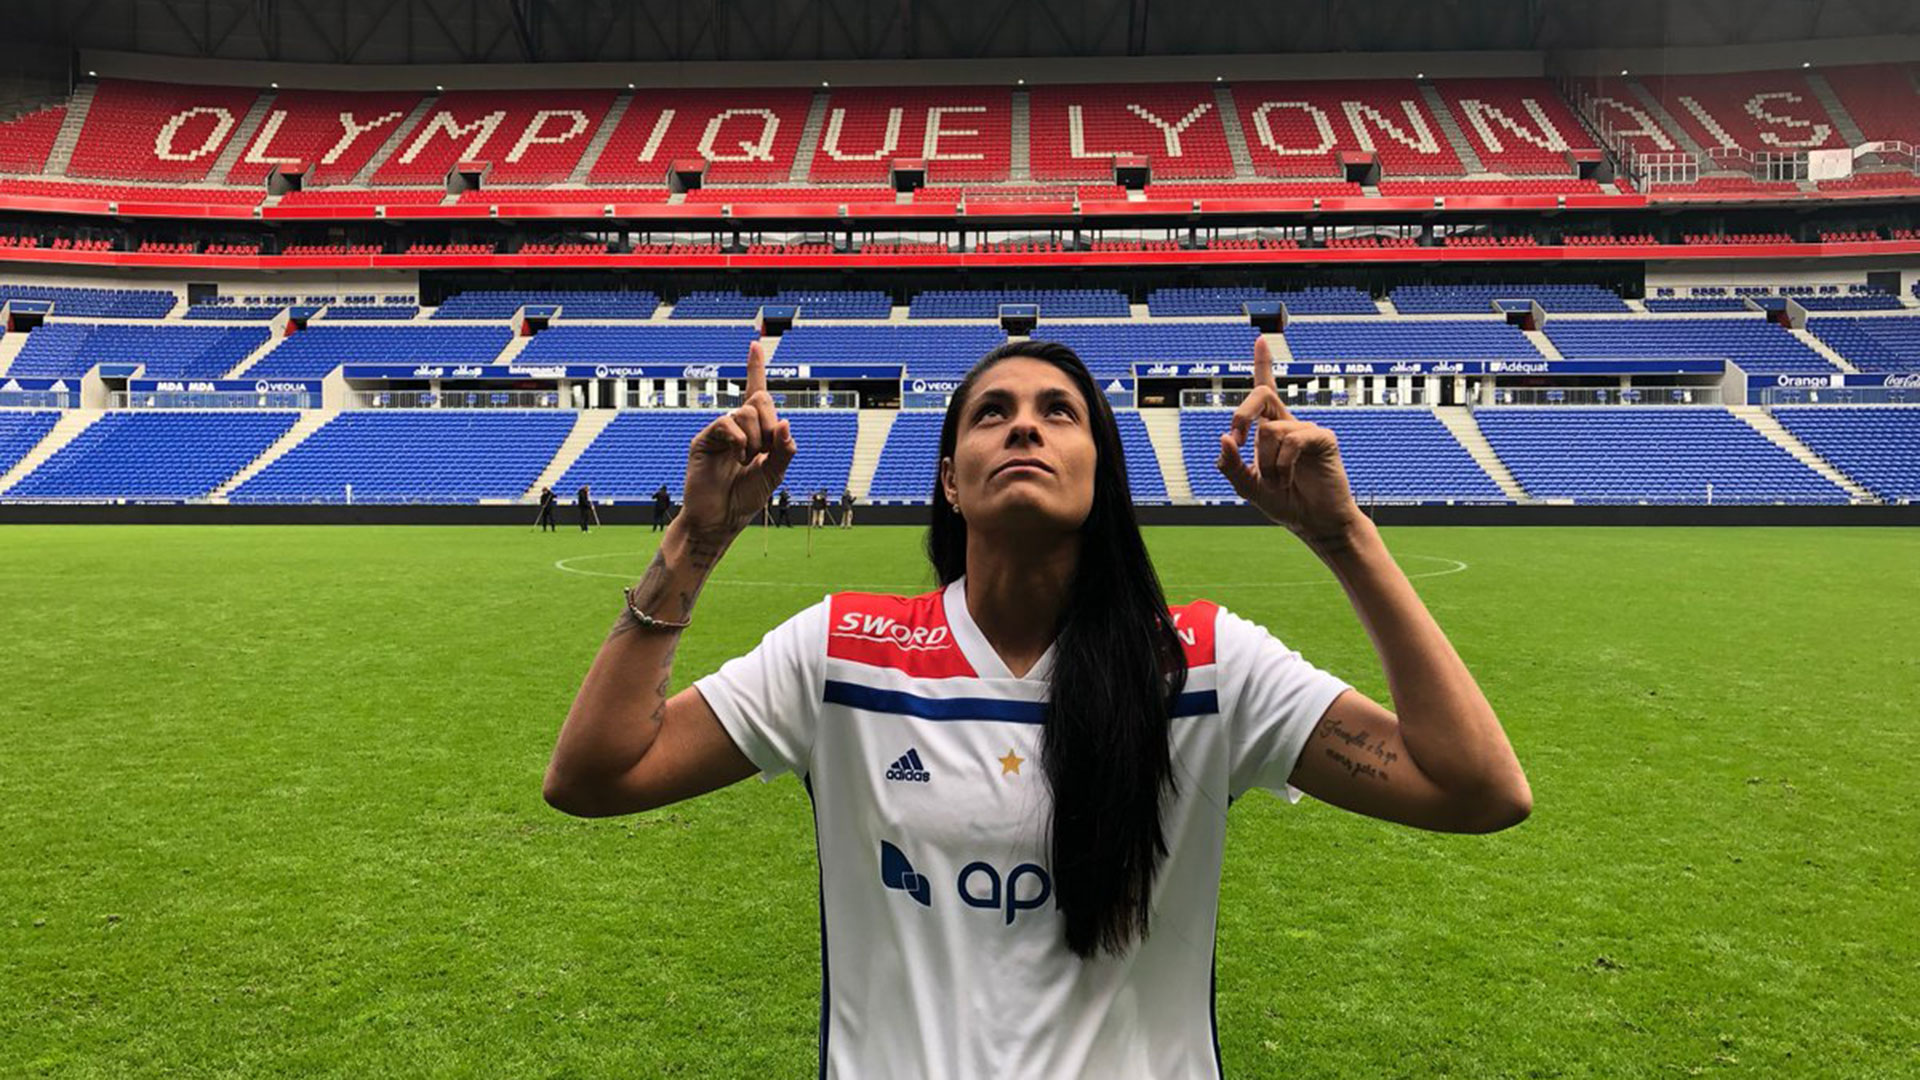 La argentina Soledad Jaimes juega en el Lyon